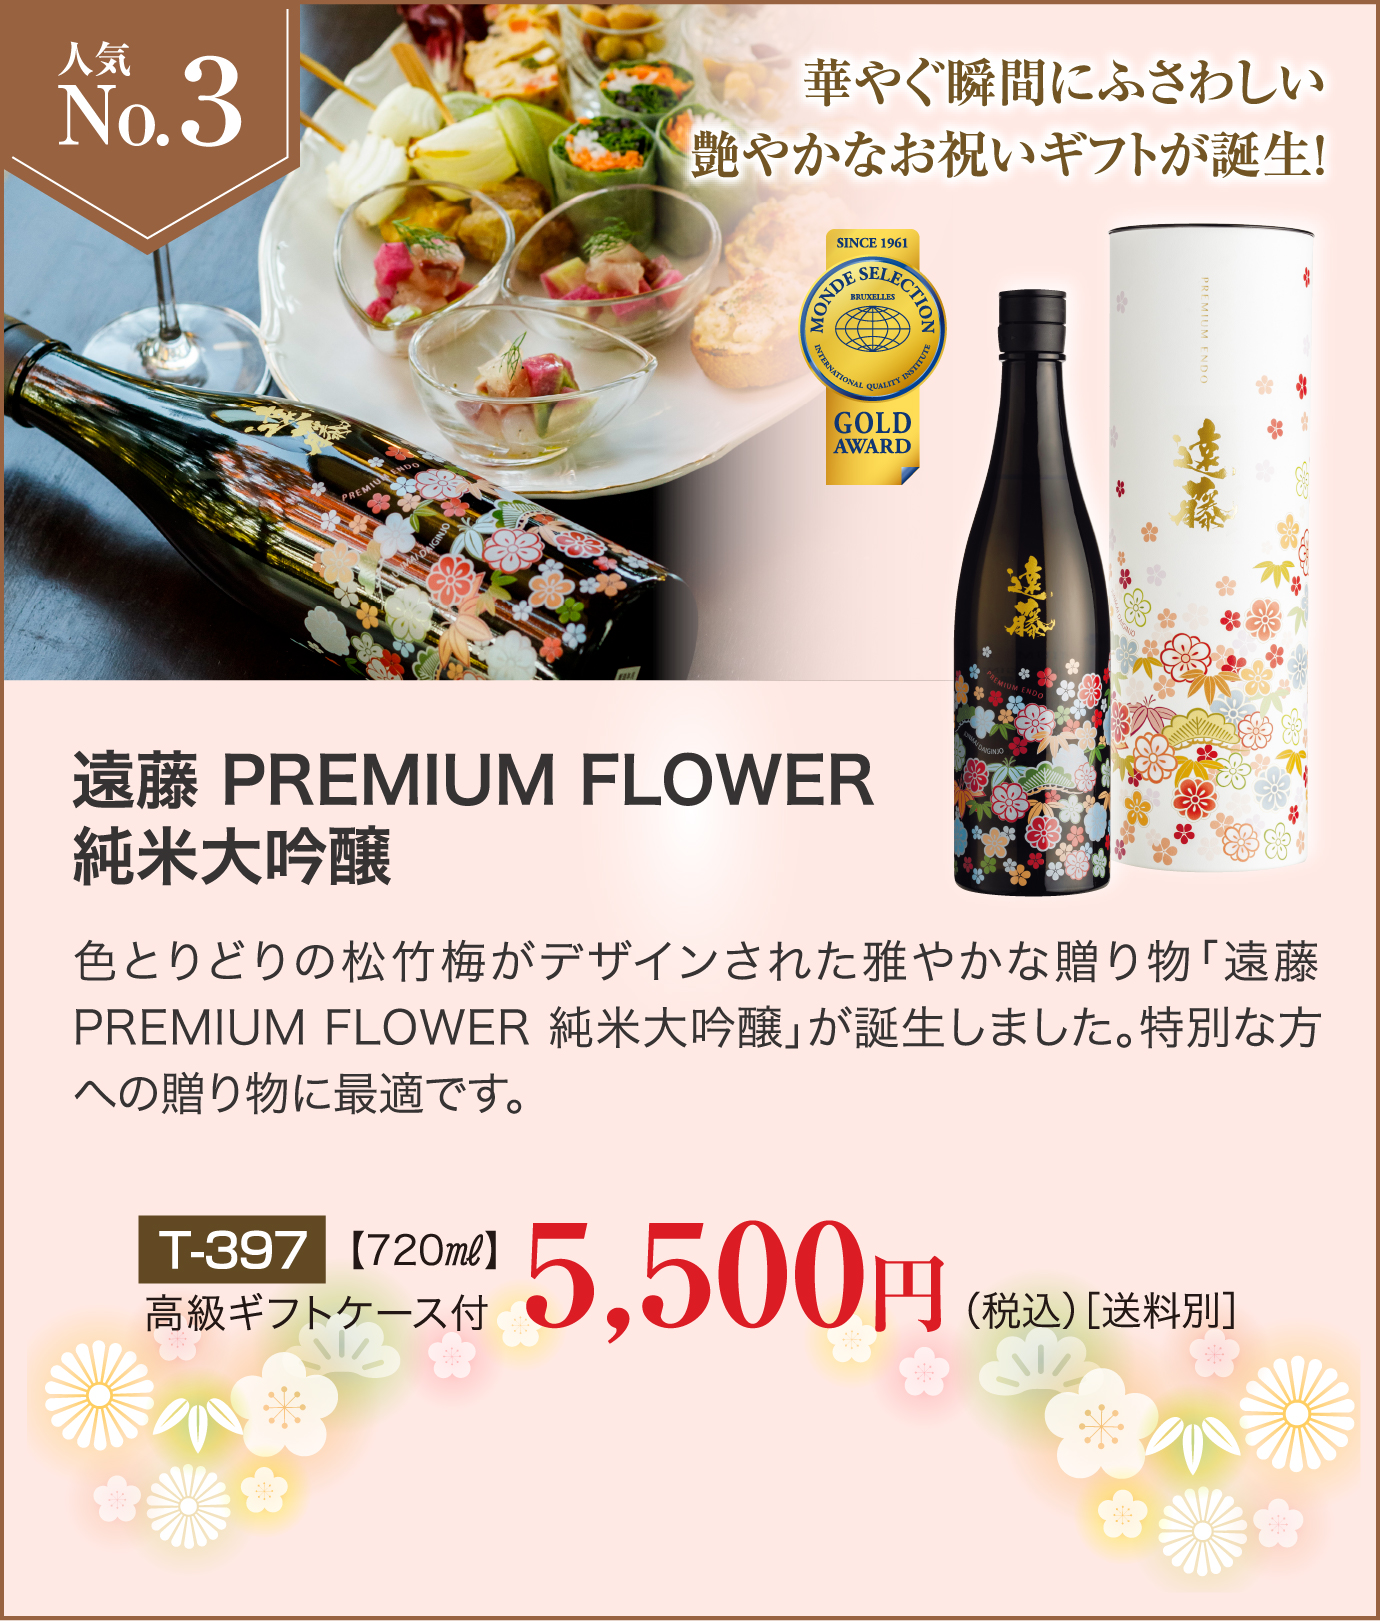 お歳暮・年末ギフト人気ランキングNo3 遠藤 PREMIUM FLOWER 純米大吟醸 5,500円